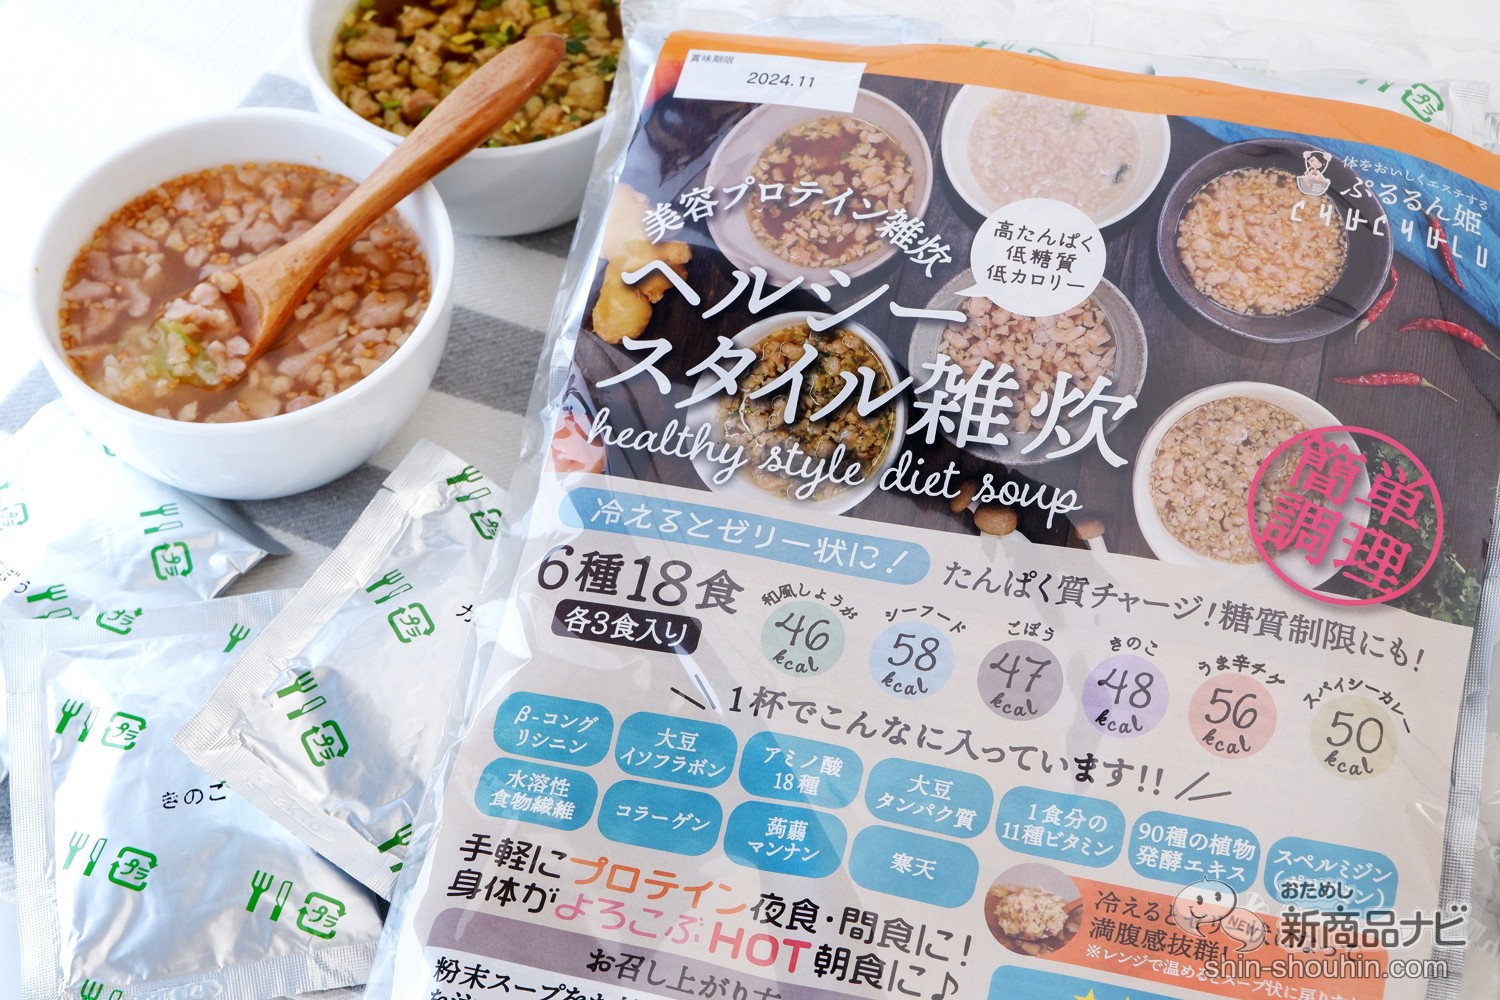 米無しヘルシースタイル雑炊18食分】送料無料 - ダイエット食品